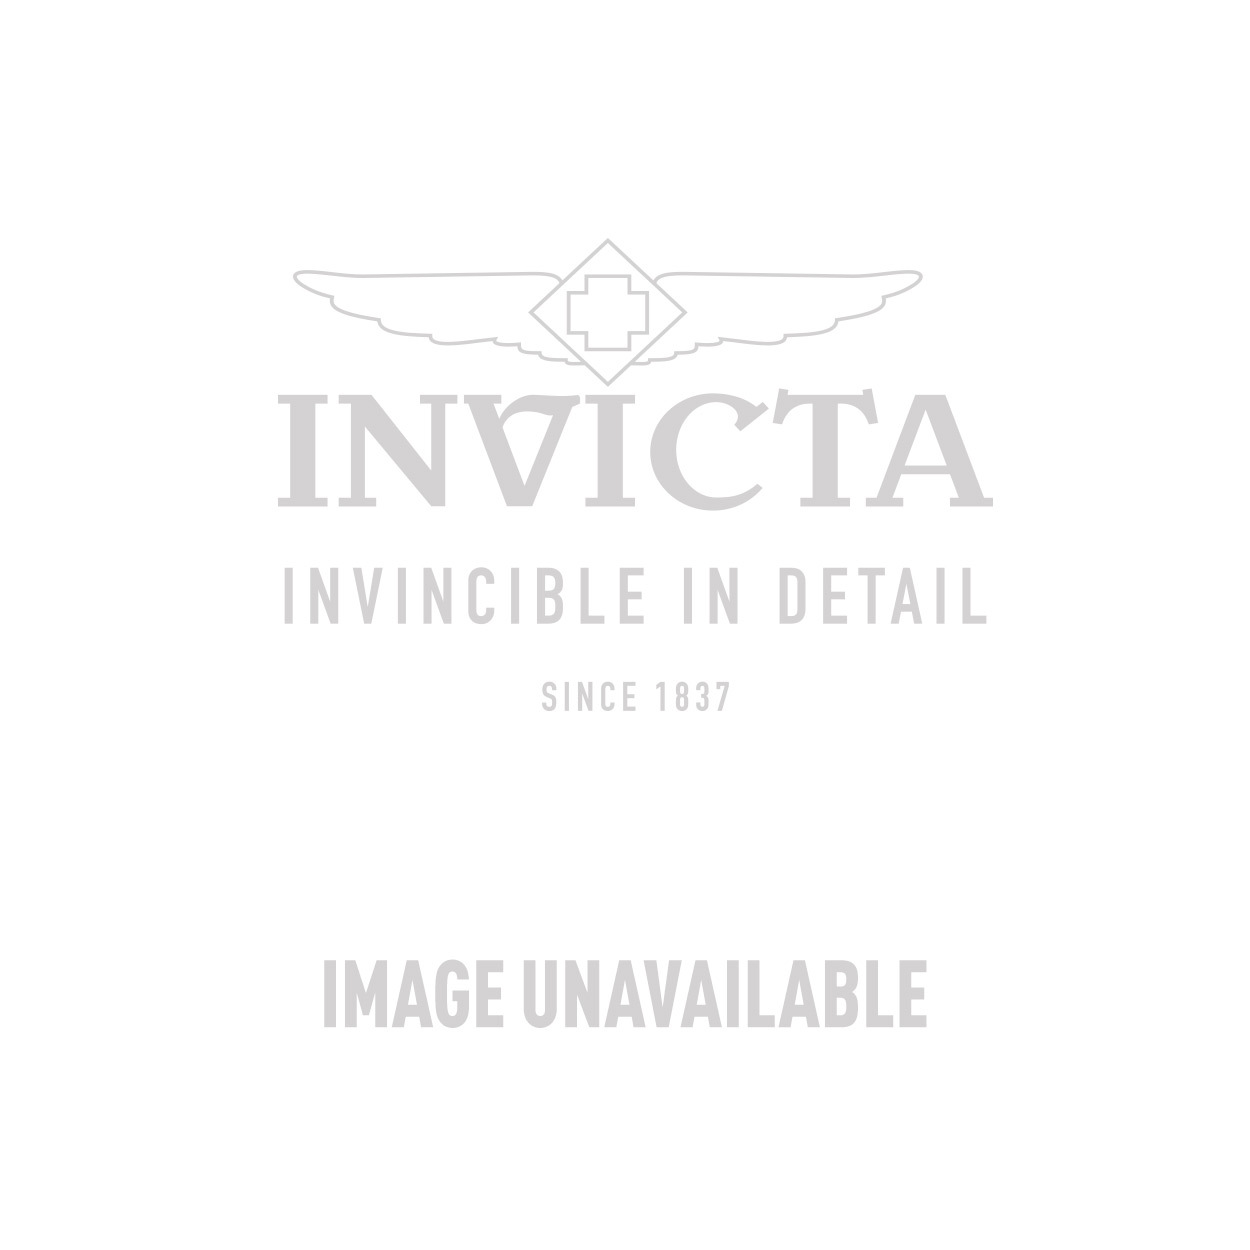 Invicta Model 28552